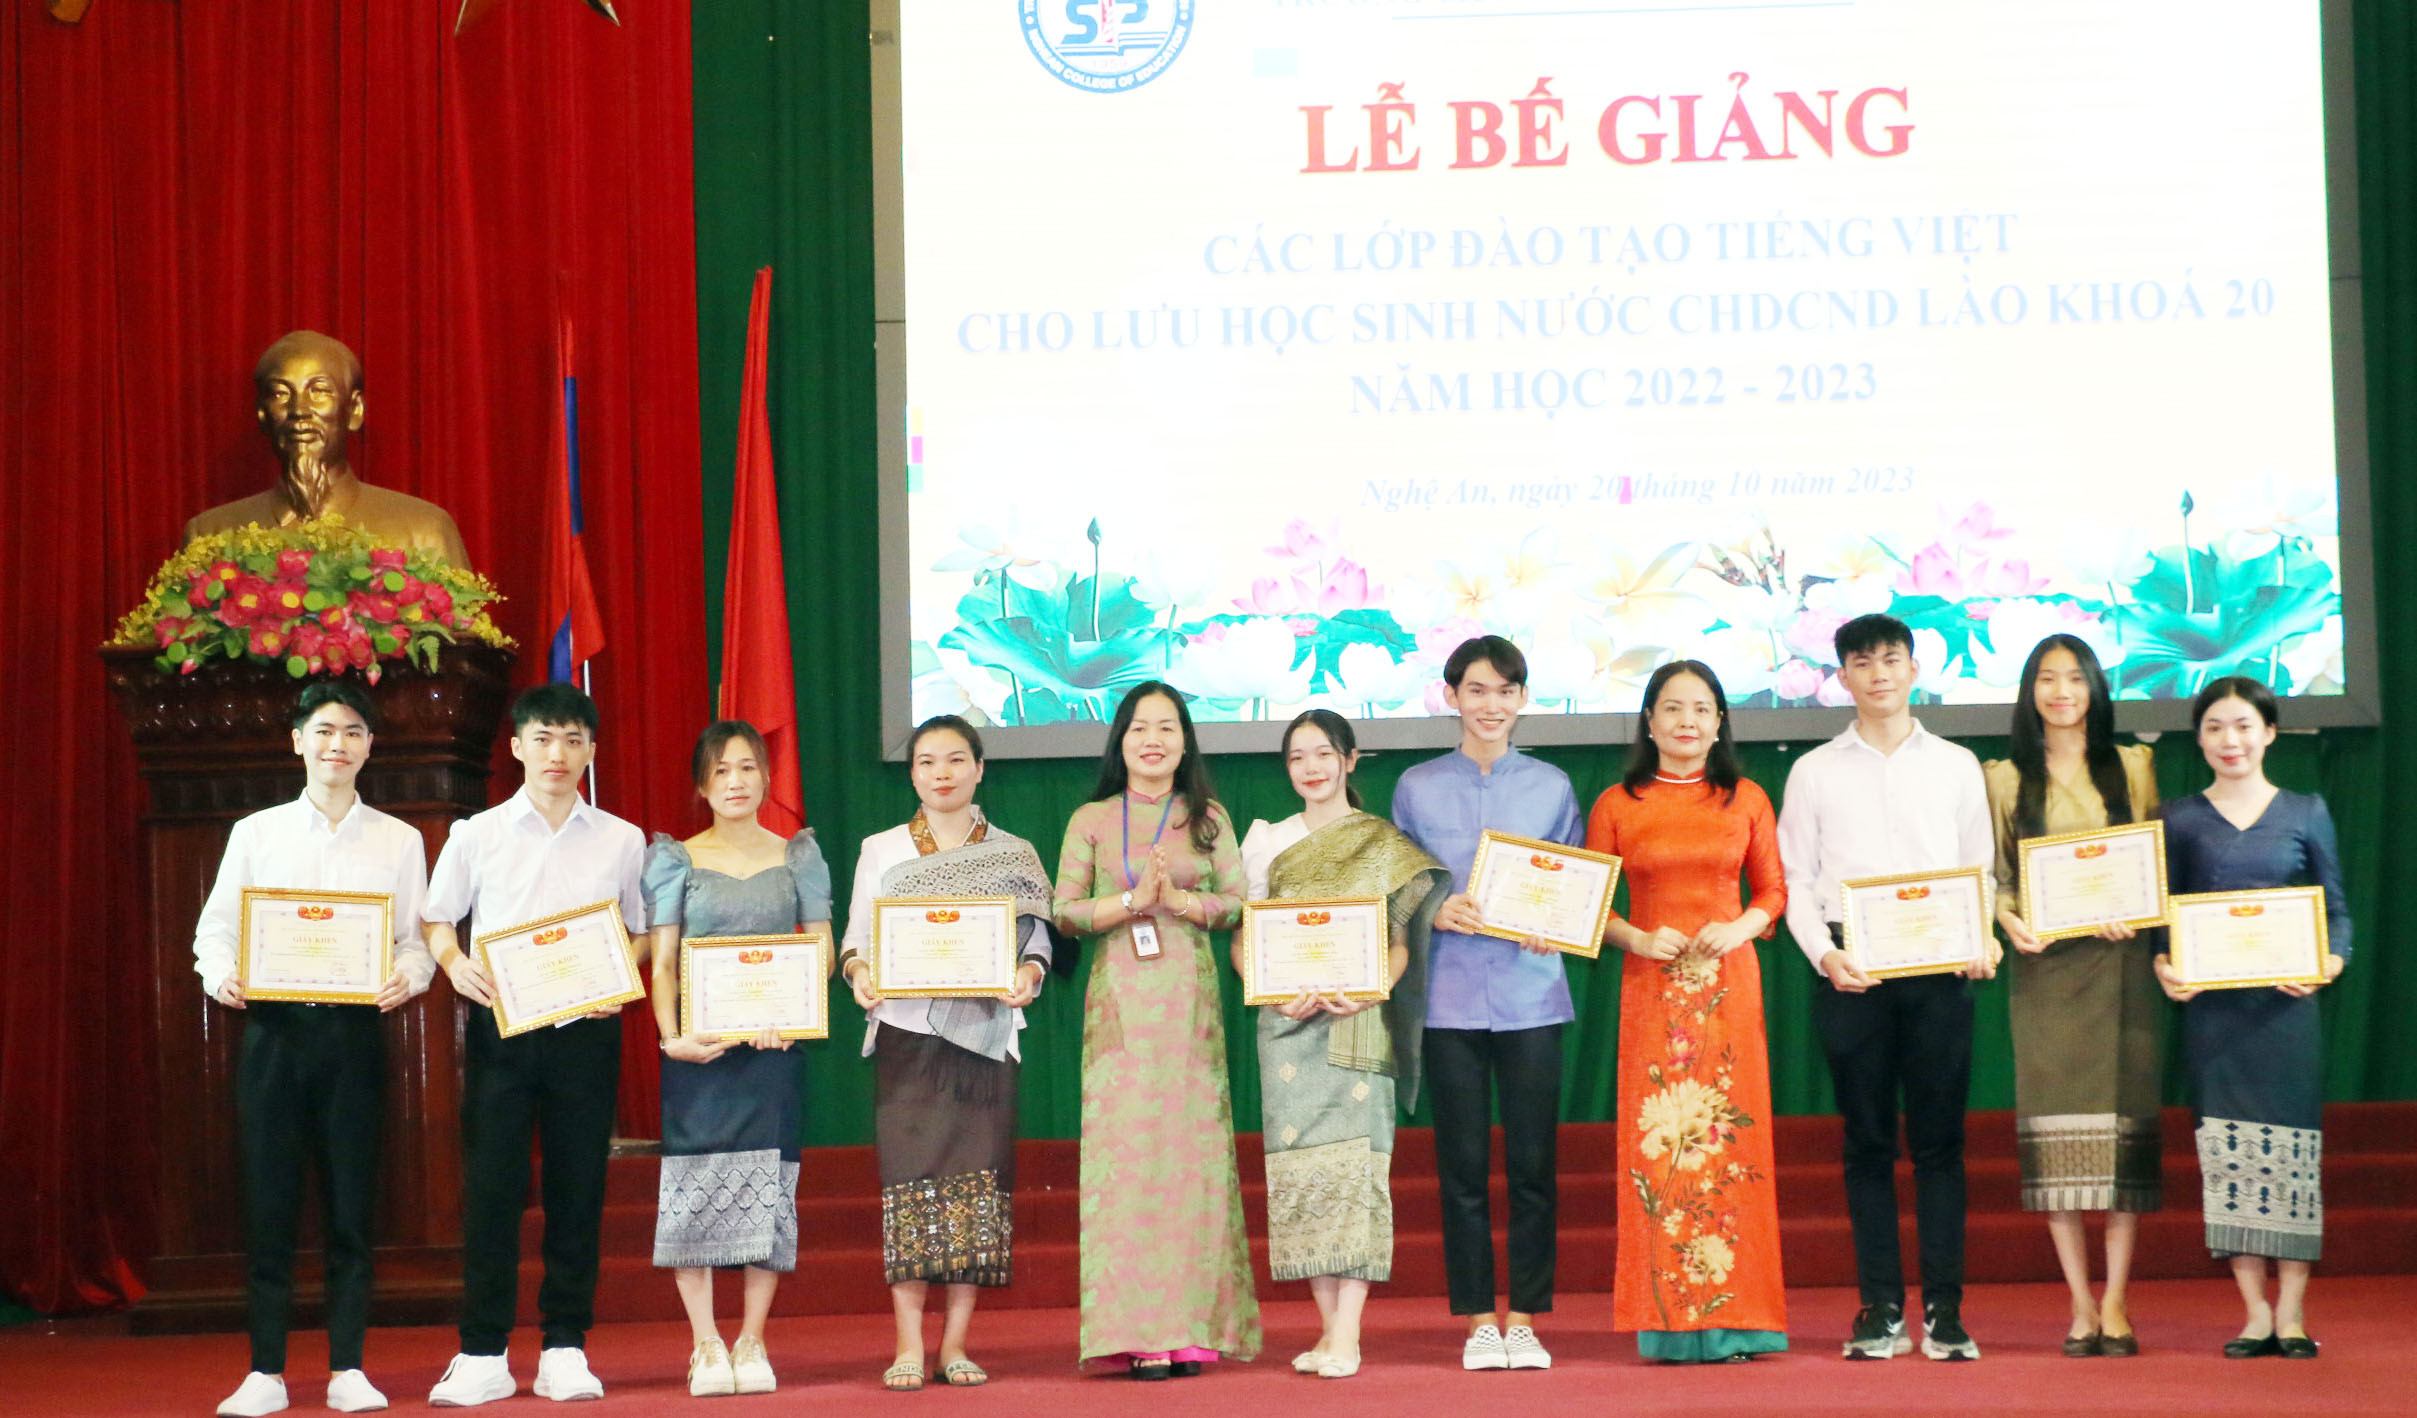 bna_Lãnh đạo nhà trường trao giấy chứng nhận tốt nghiệp cho các lưu học sinh Lào. Ảnh- Mỹ Hà.jpeg